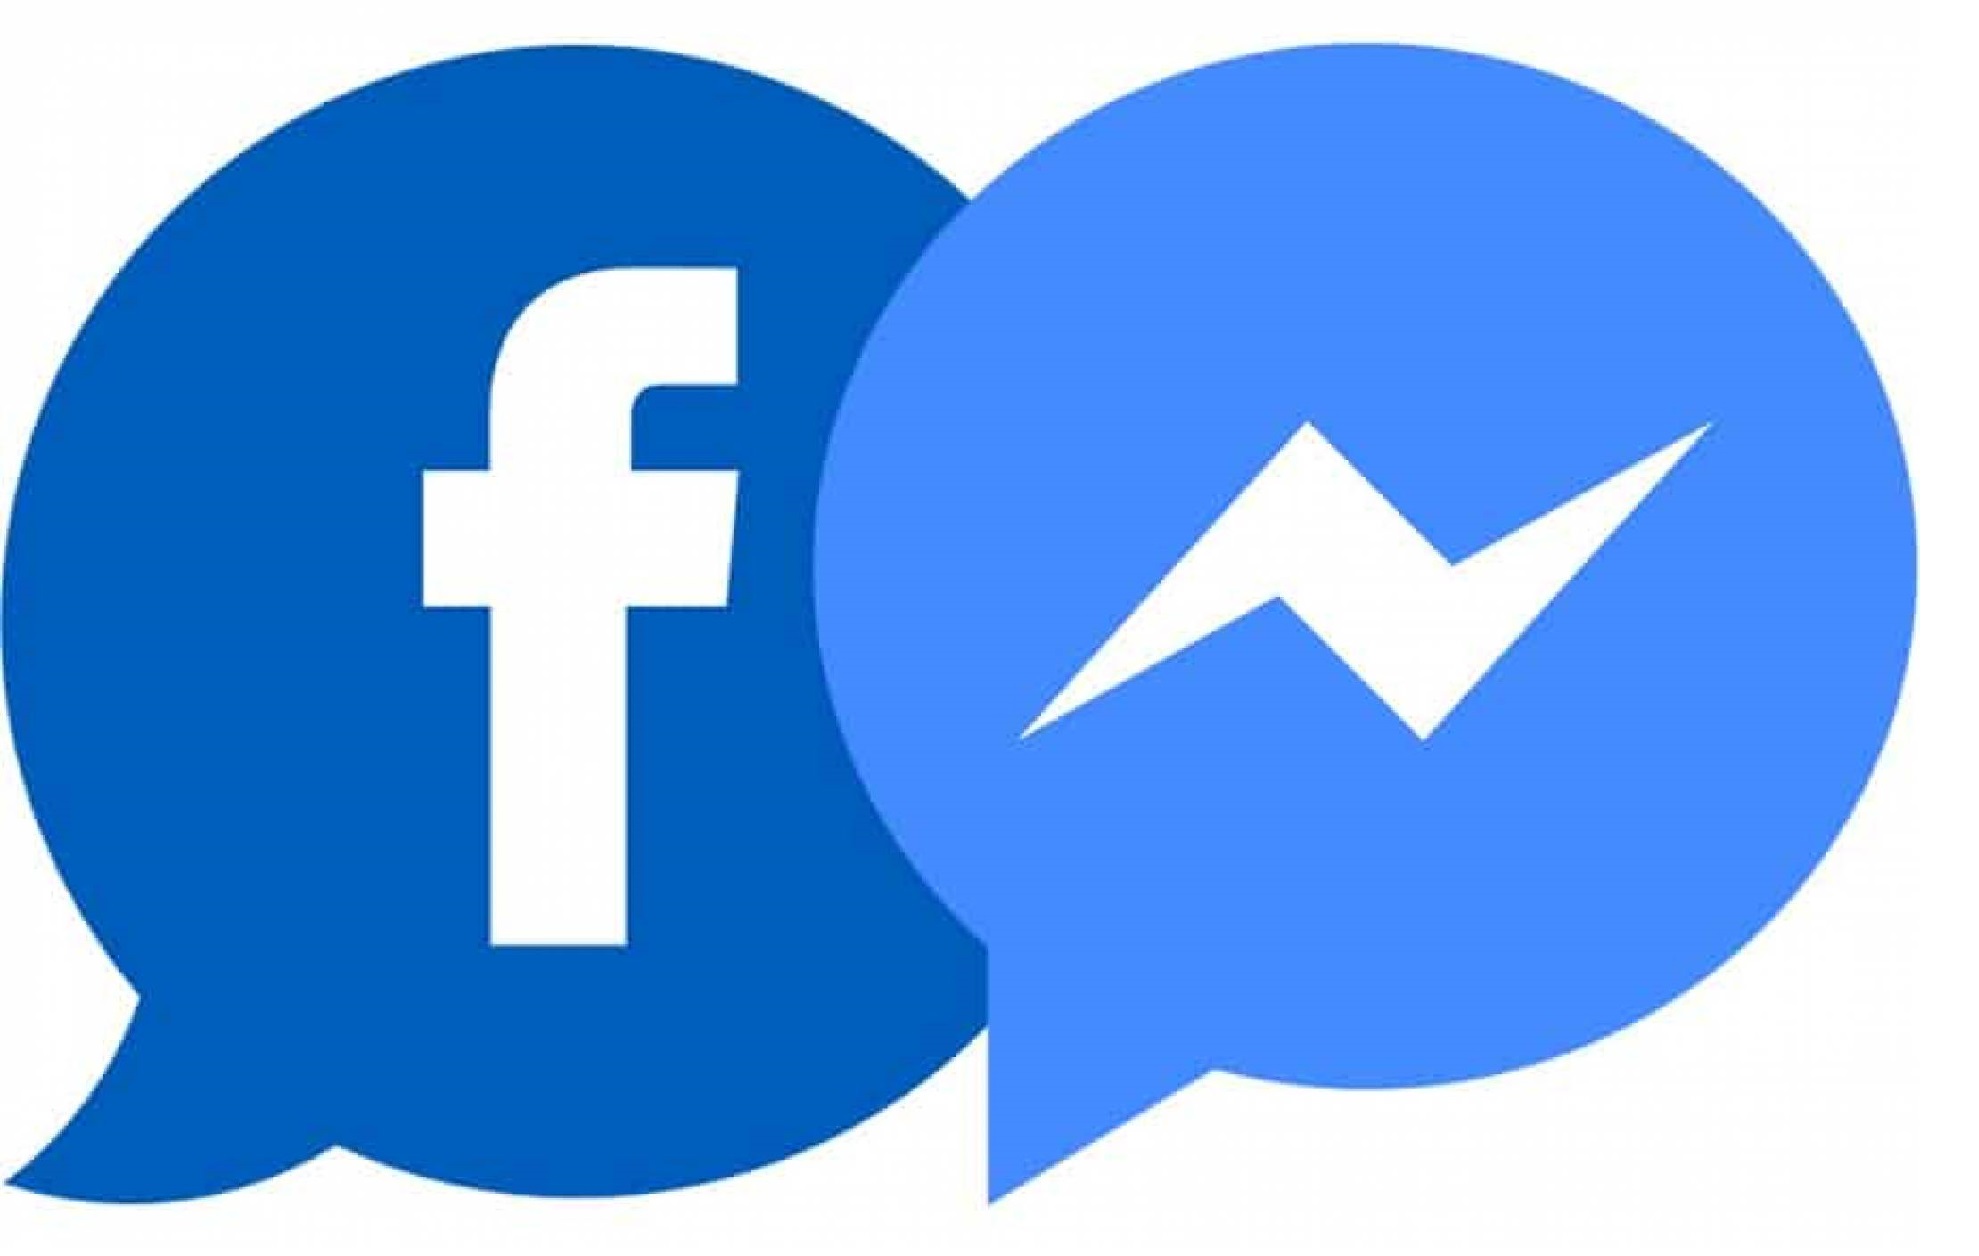 facebook messenger app download apk